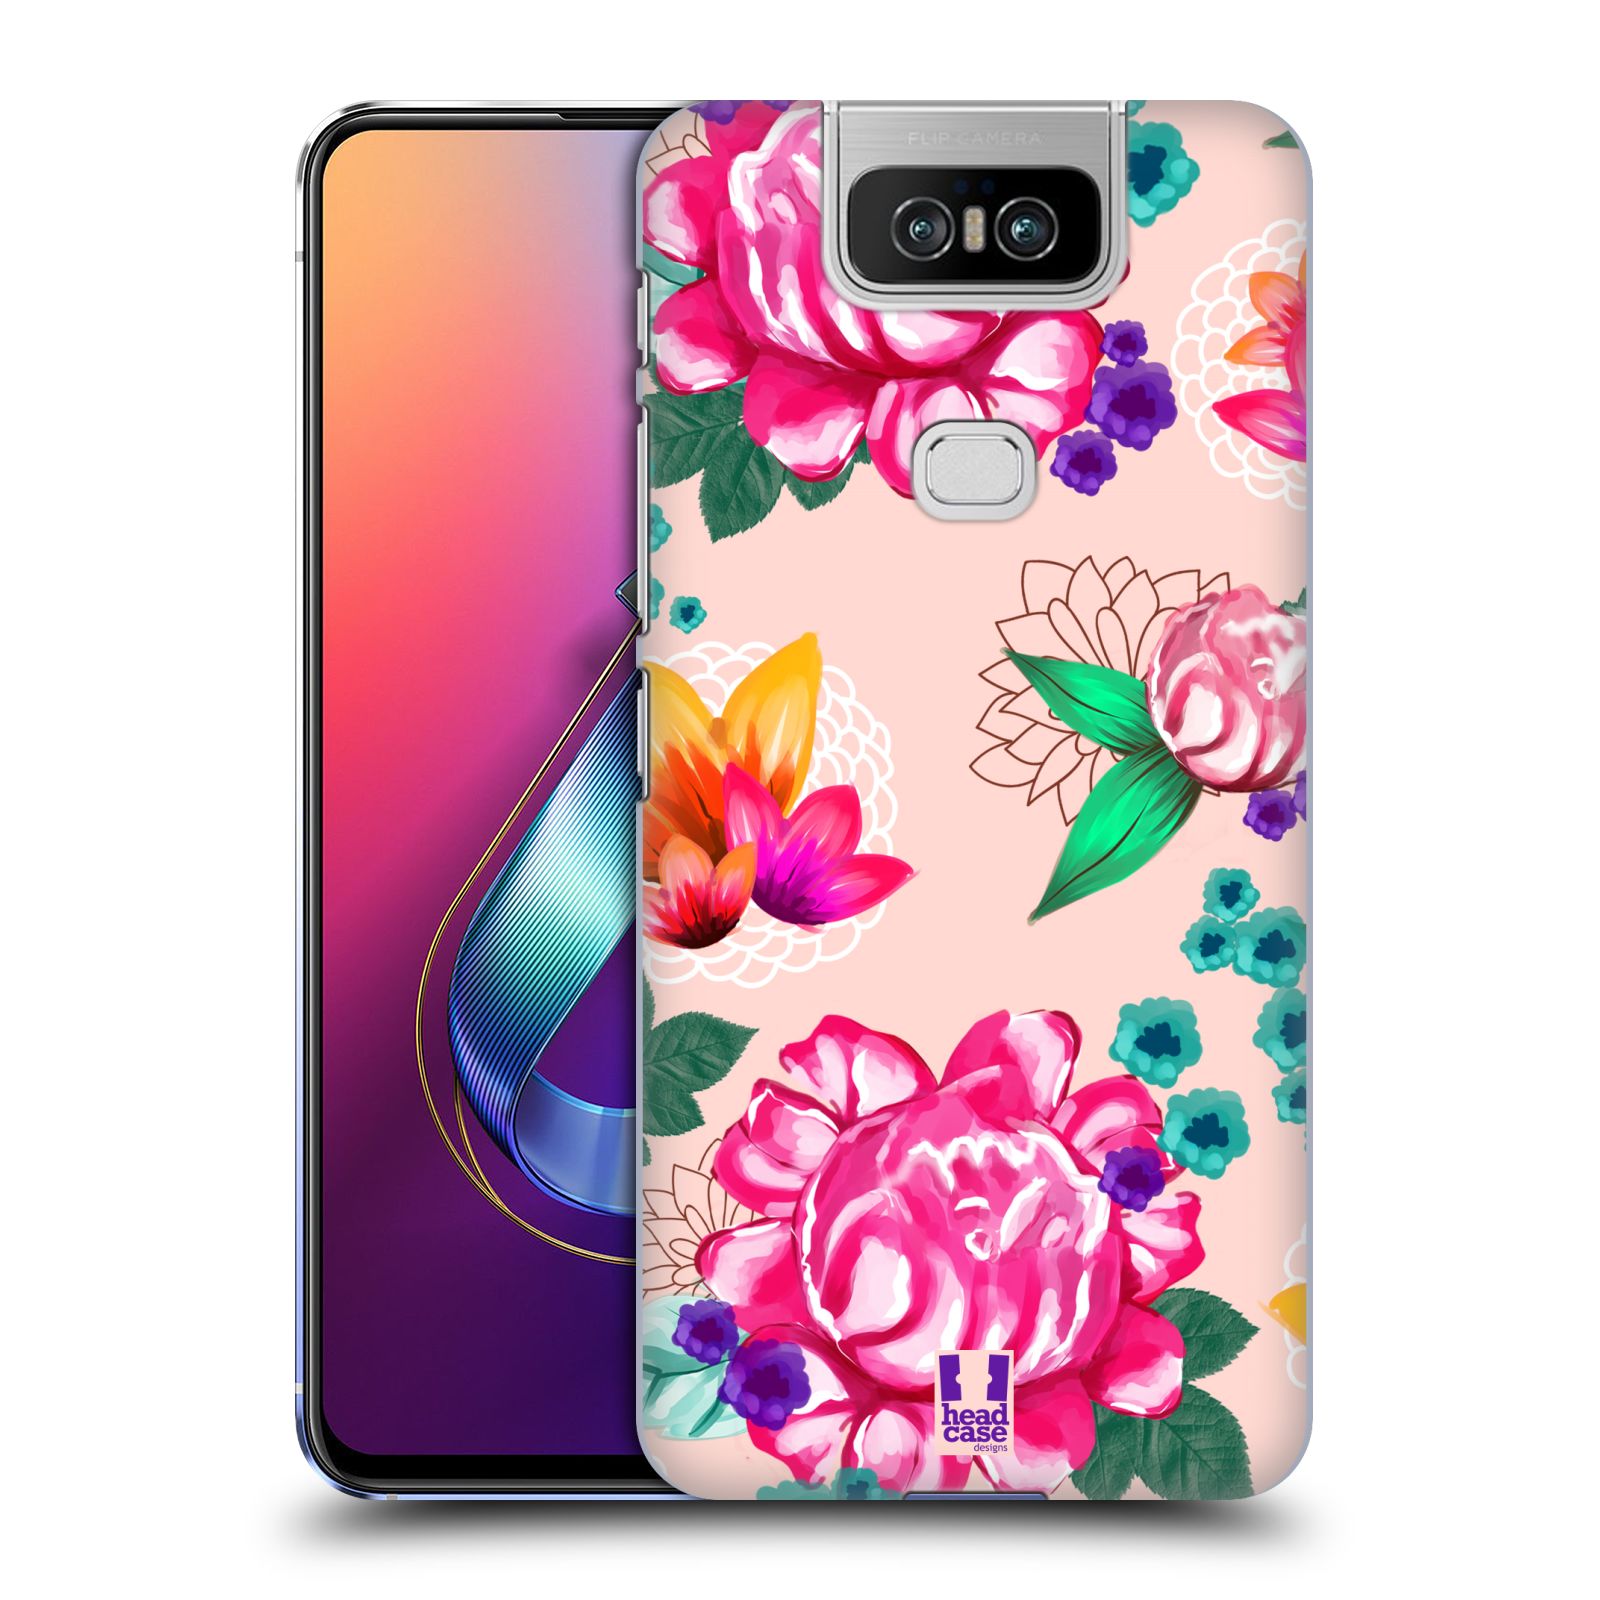 Pouzdro na mobil Asus Zenfone 6 ZS630KL - HEAD CASE - vzor Malované květiny barevné SVĚTLE RŮŽOVÁ